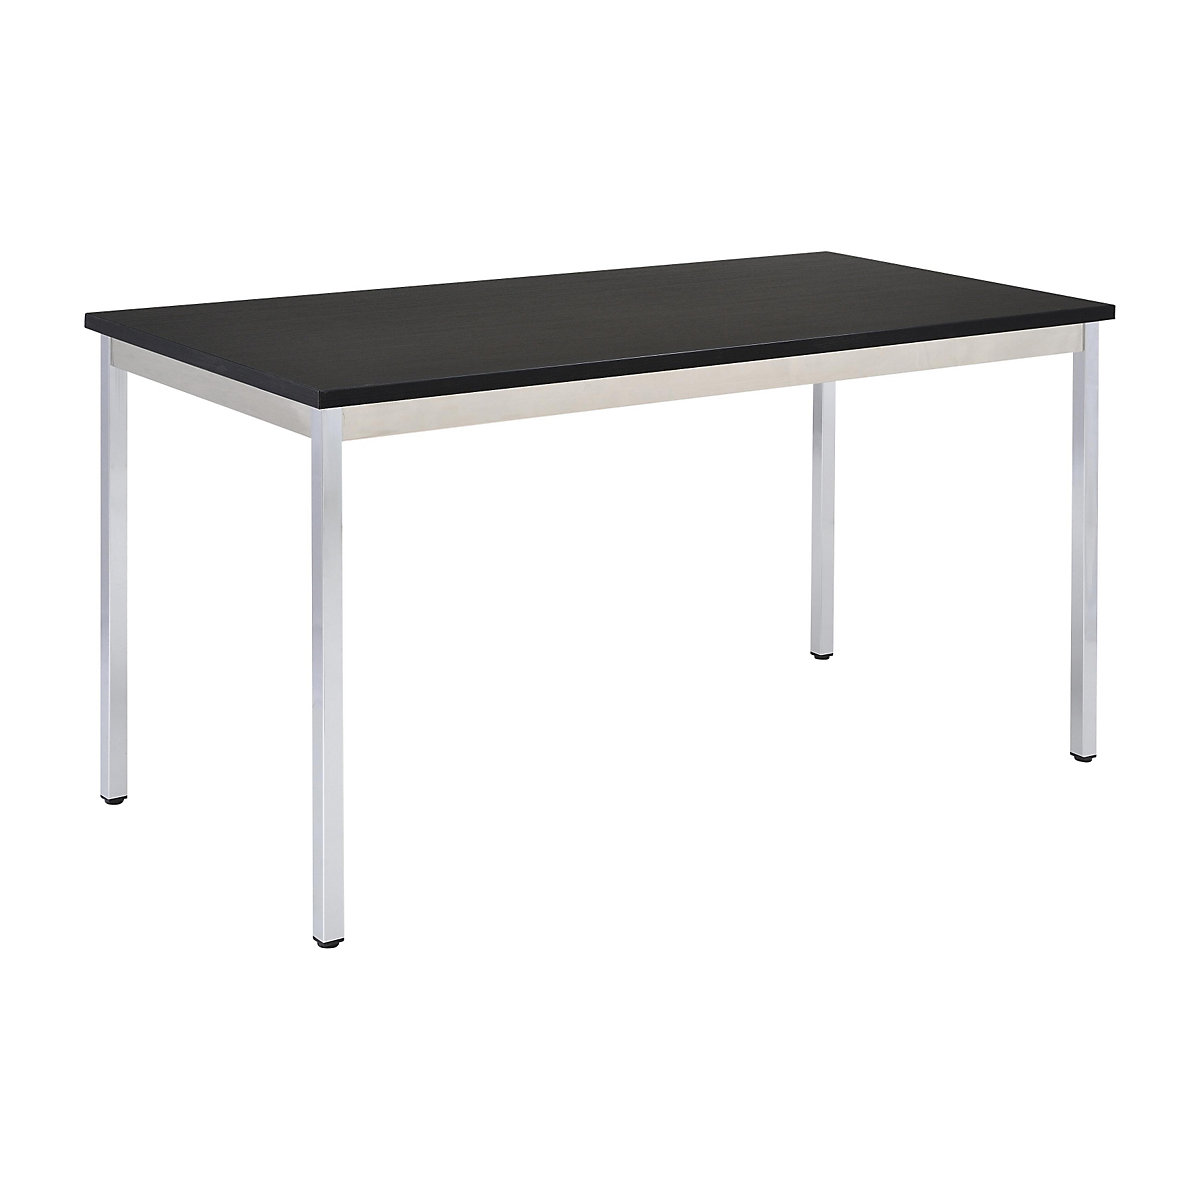 Table polyvalente – eurokraft basic, rectangulaire, h x l x p 740 x 700 x 600 mm, plateau noir, piétement chromé-14